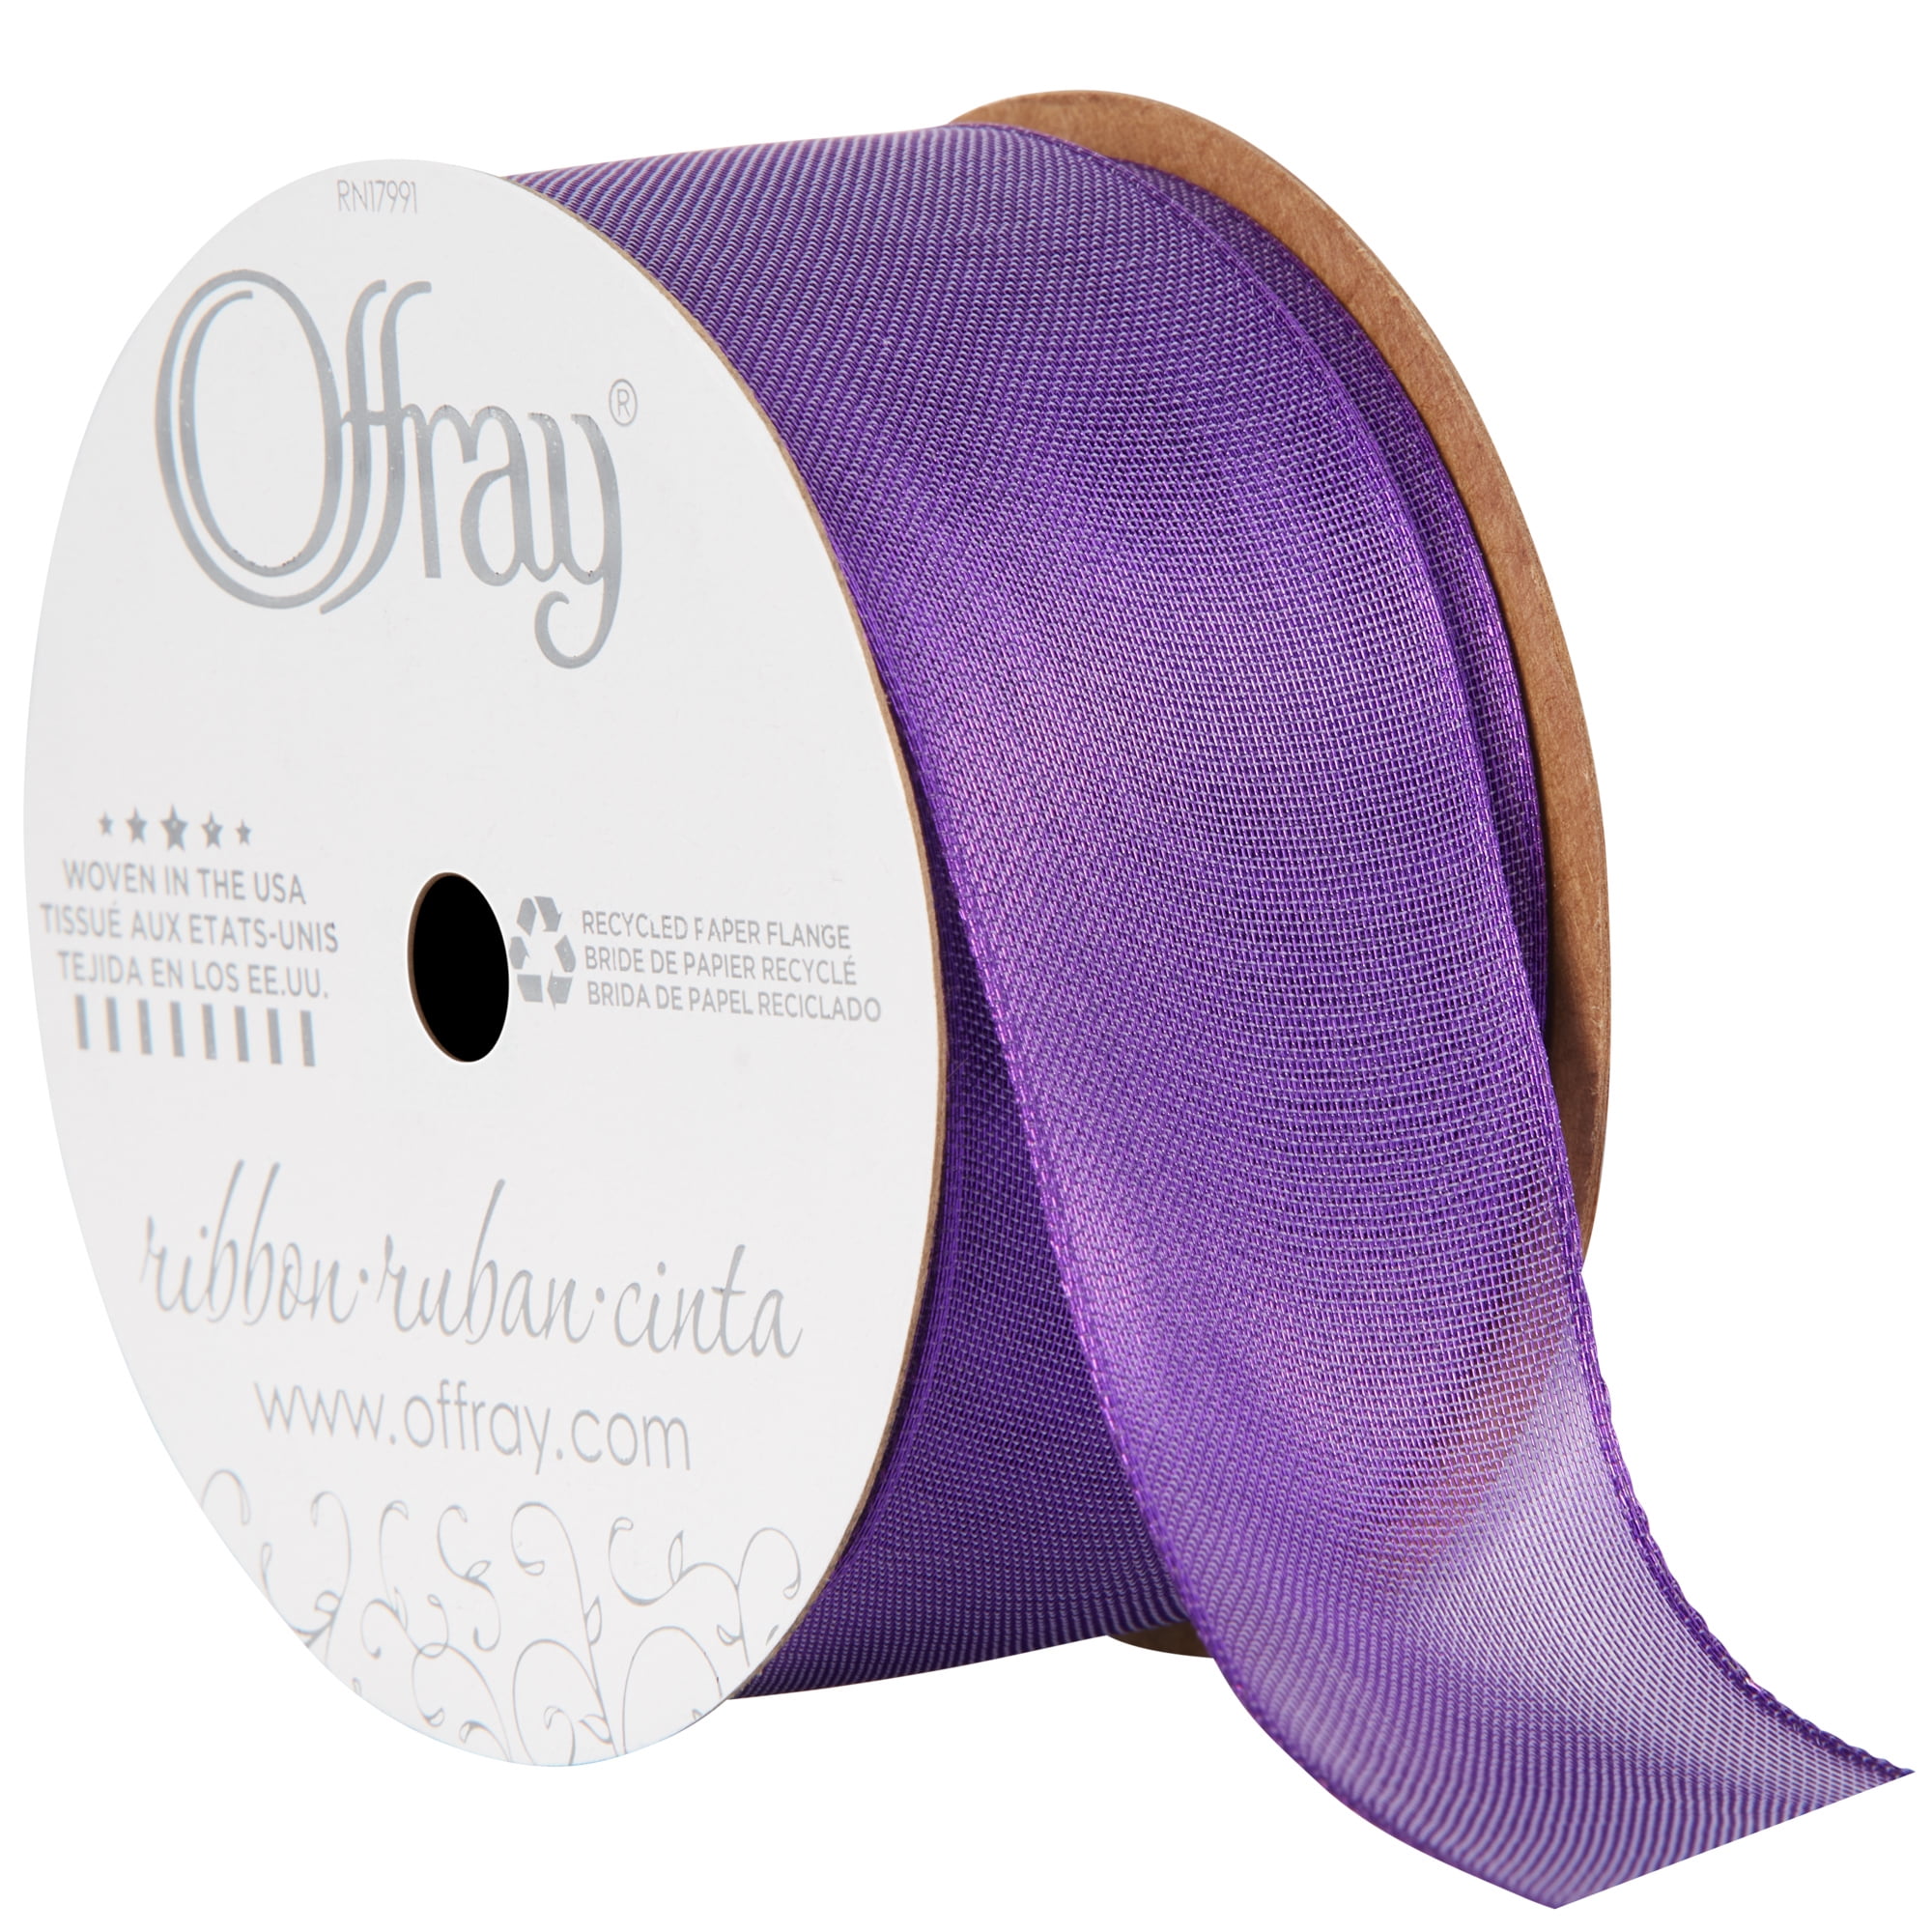 Offray Ribbon, Purple 7/8 inch Disney Frozen Grosgrain Ribbon for